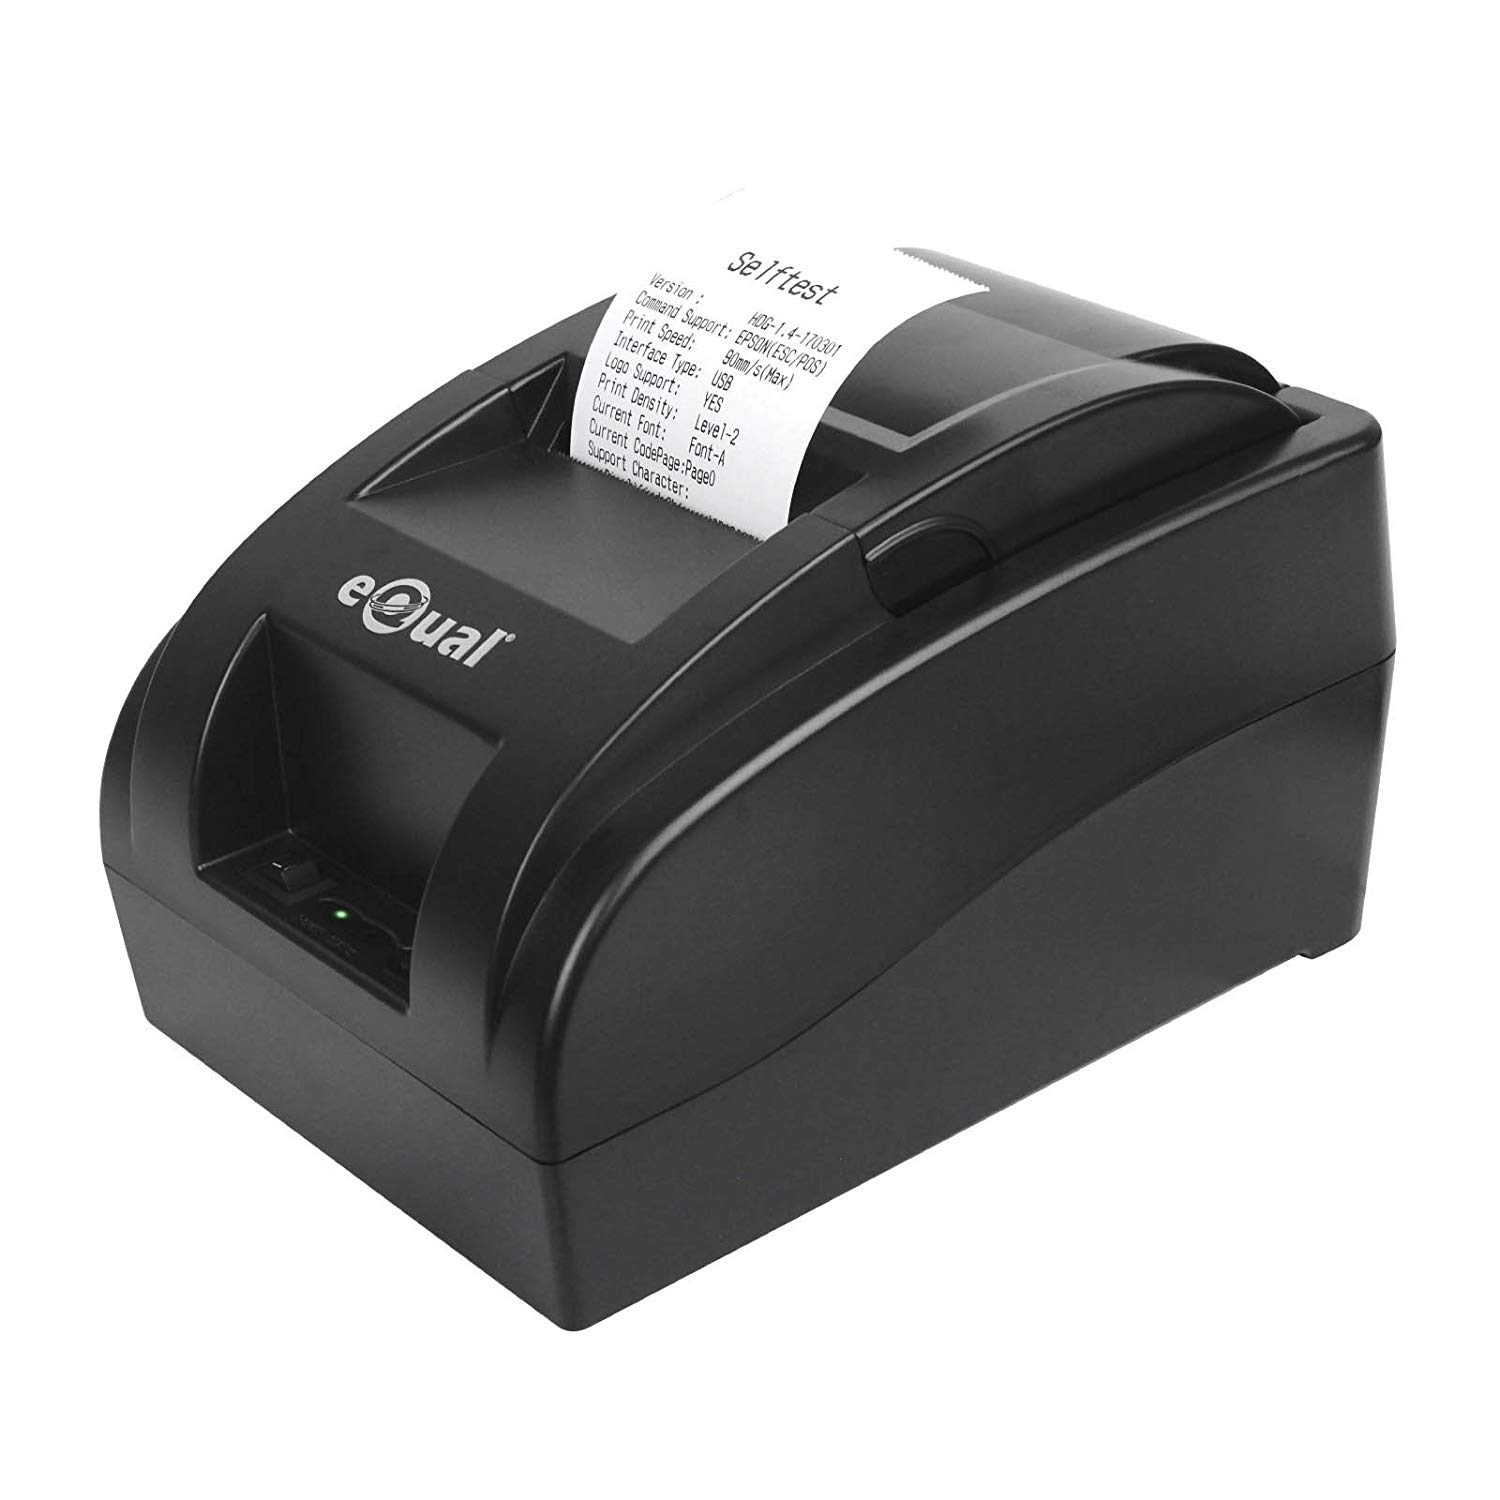 eQual IT-003 - Impresora Térmica De Tickets 58mm para Punto De Venta